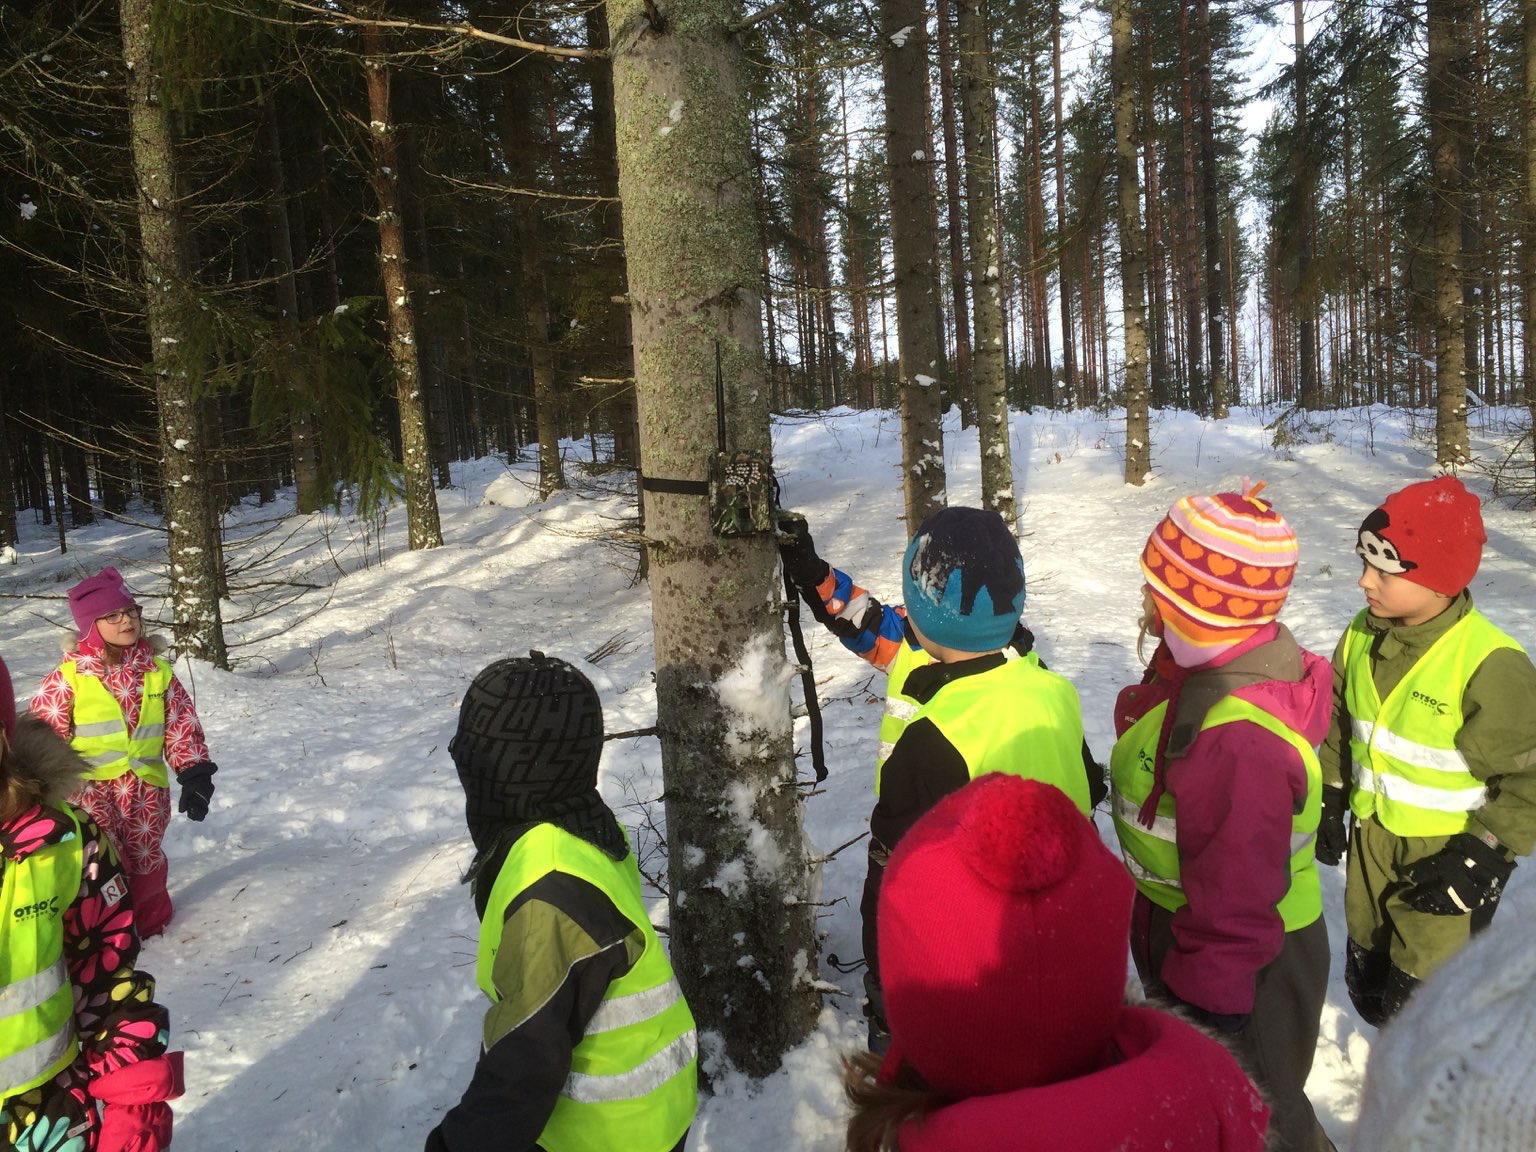 PROJEKTIN TAUSTAA - Vintiöt on esikouluryhmä, jossa on 20 lasta ja 4 aikuista - joulukuussa 2014 päiväkodin metsäretkellä näimme lumikon - lumikkoprojektin seurauksena lapset toivoivat metsään